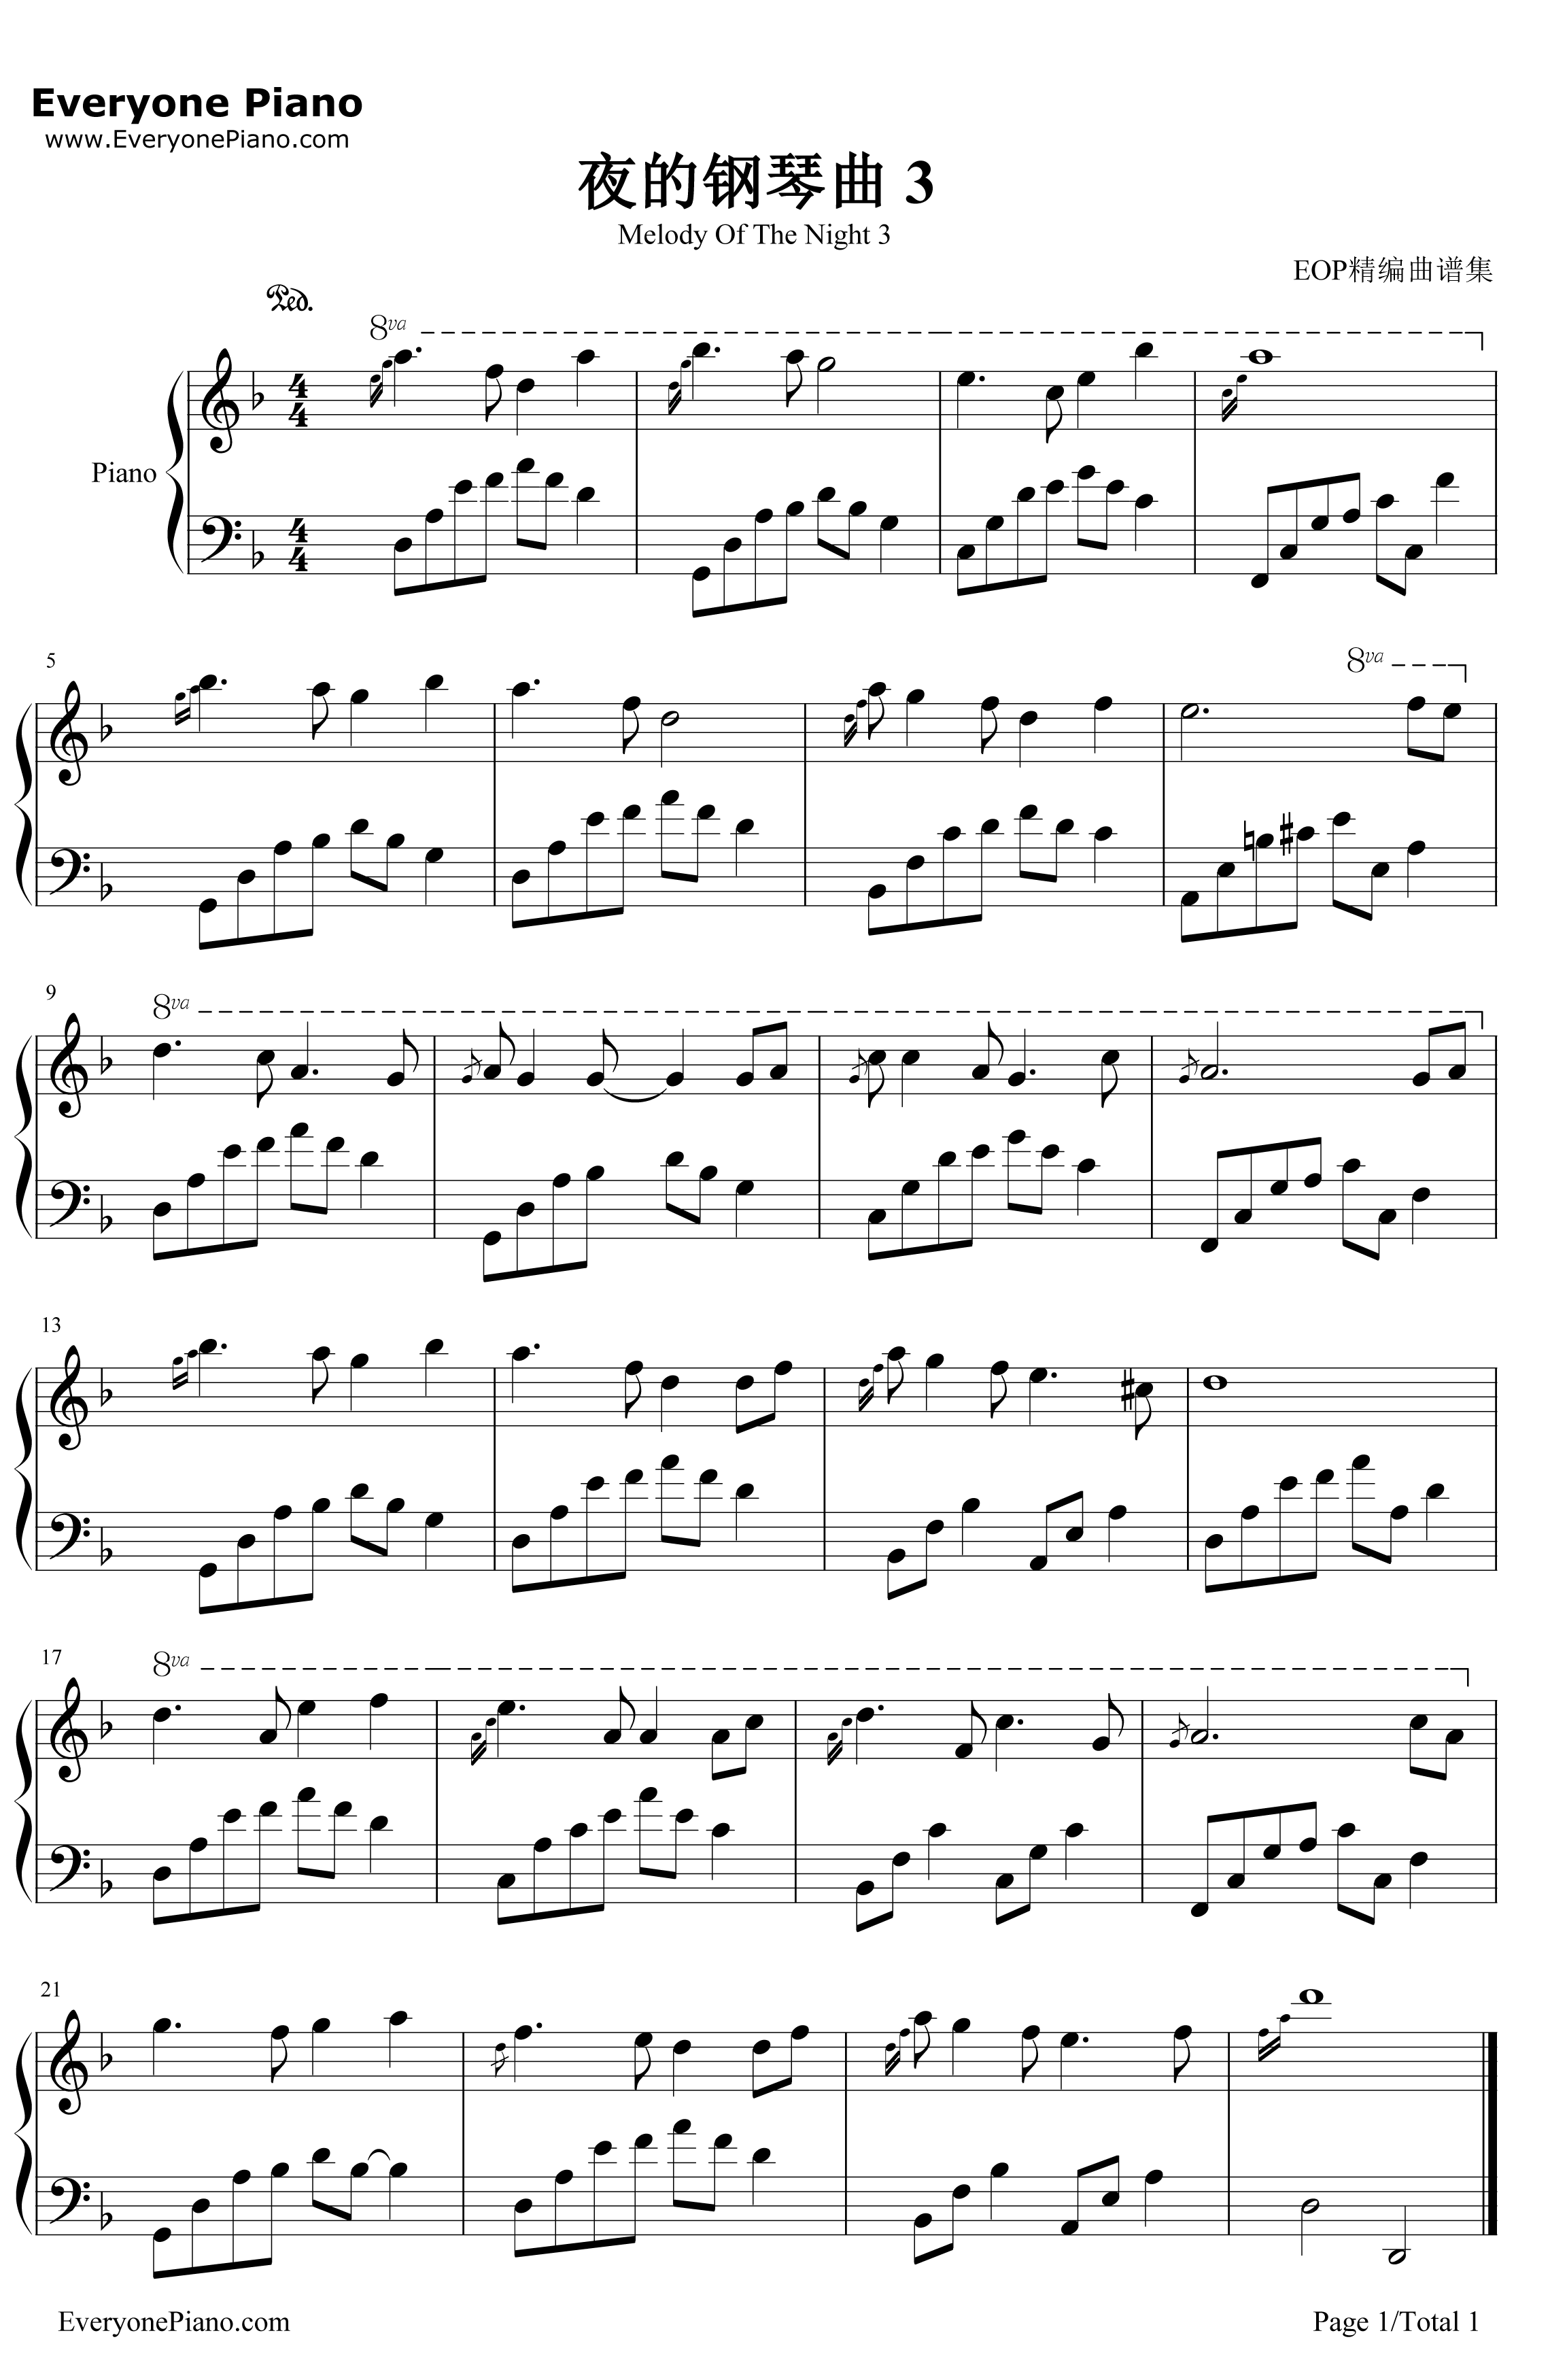 夜的钢琴曲3钢琴谱-石进-夜的钢琴曲31